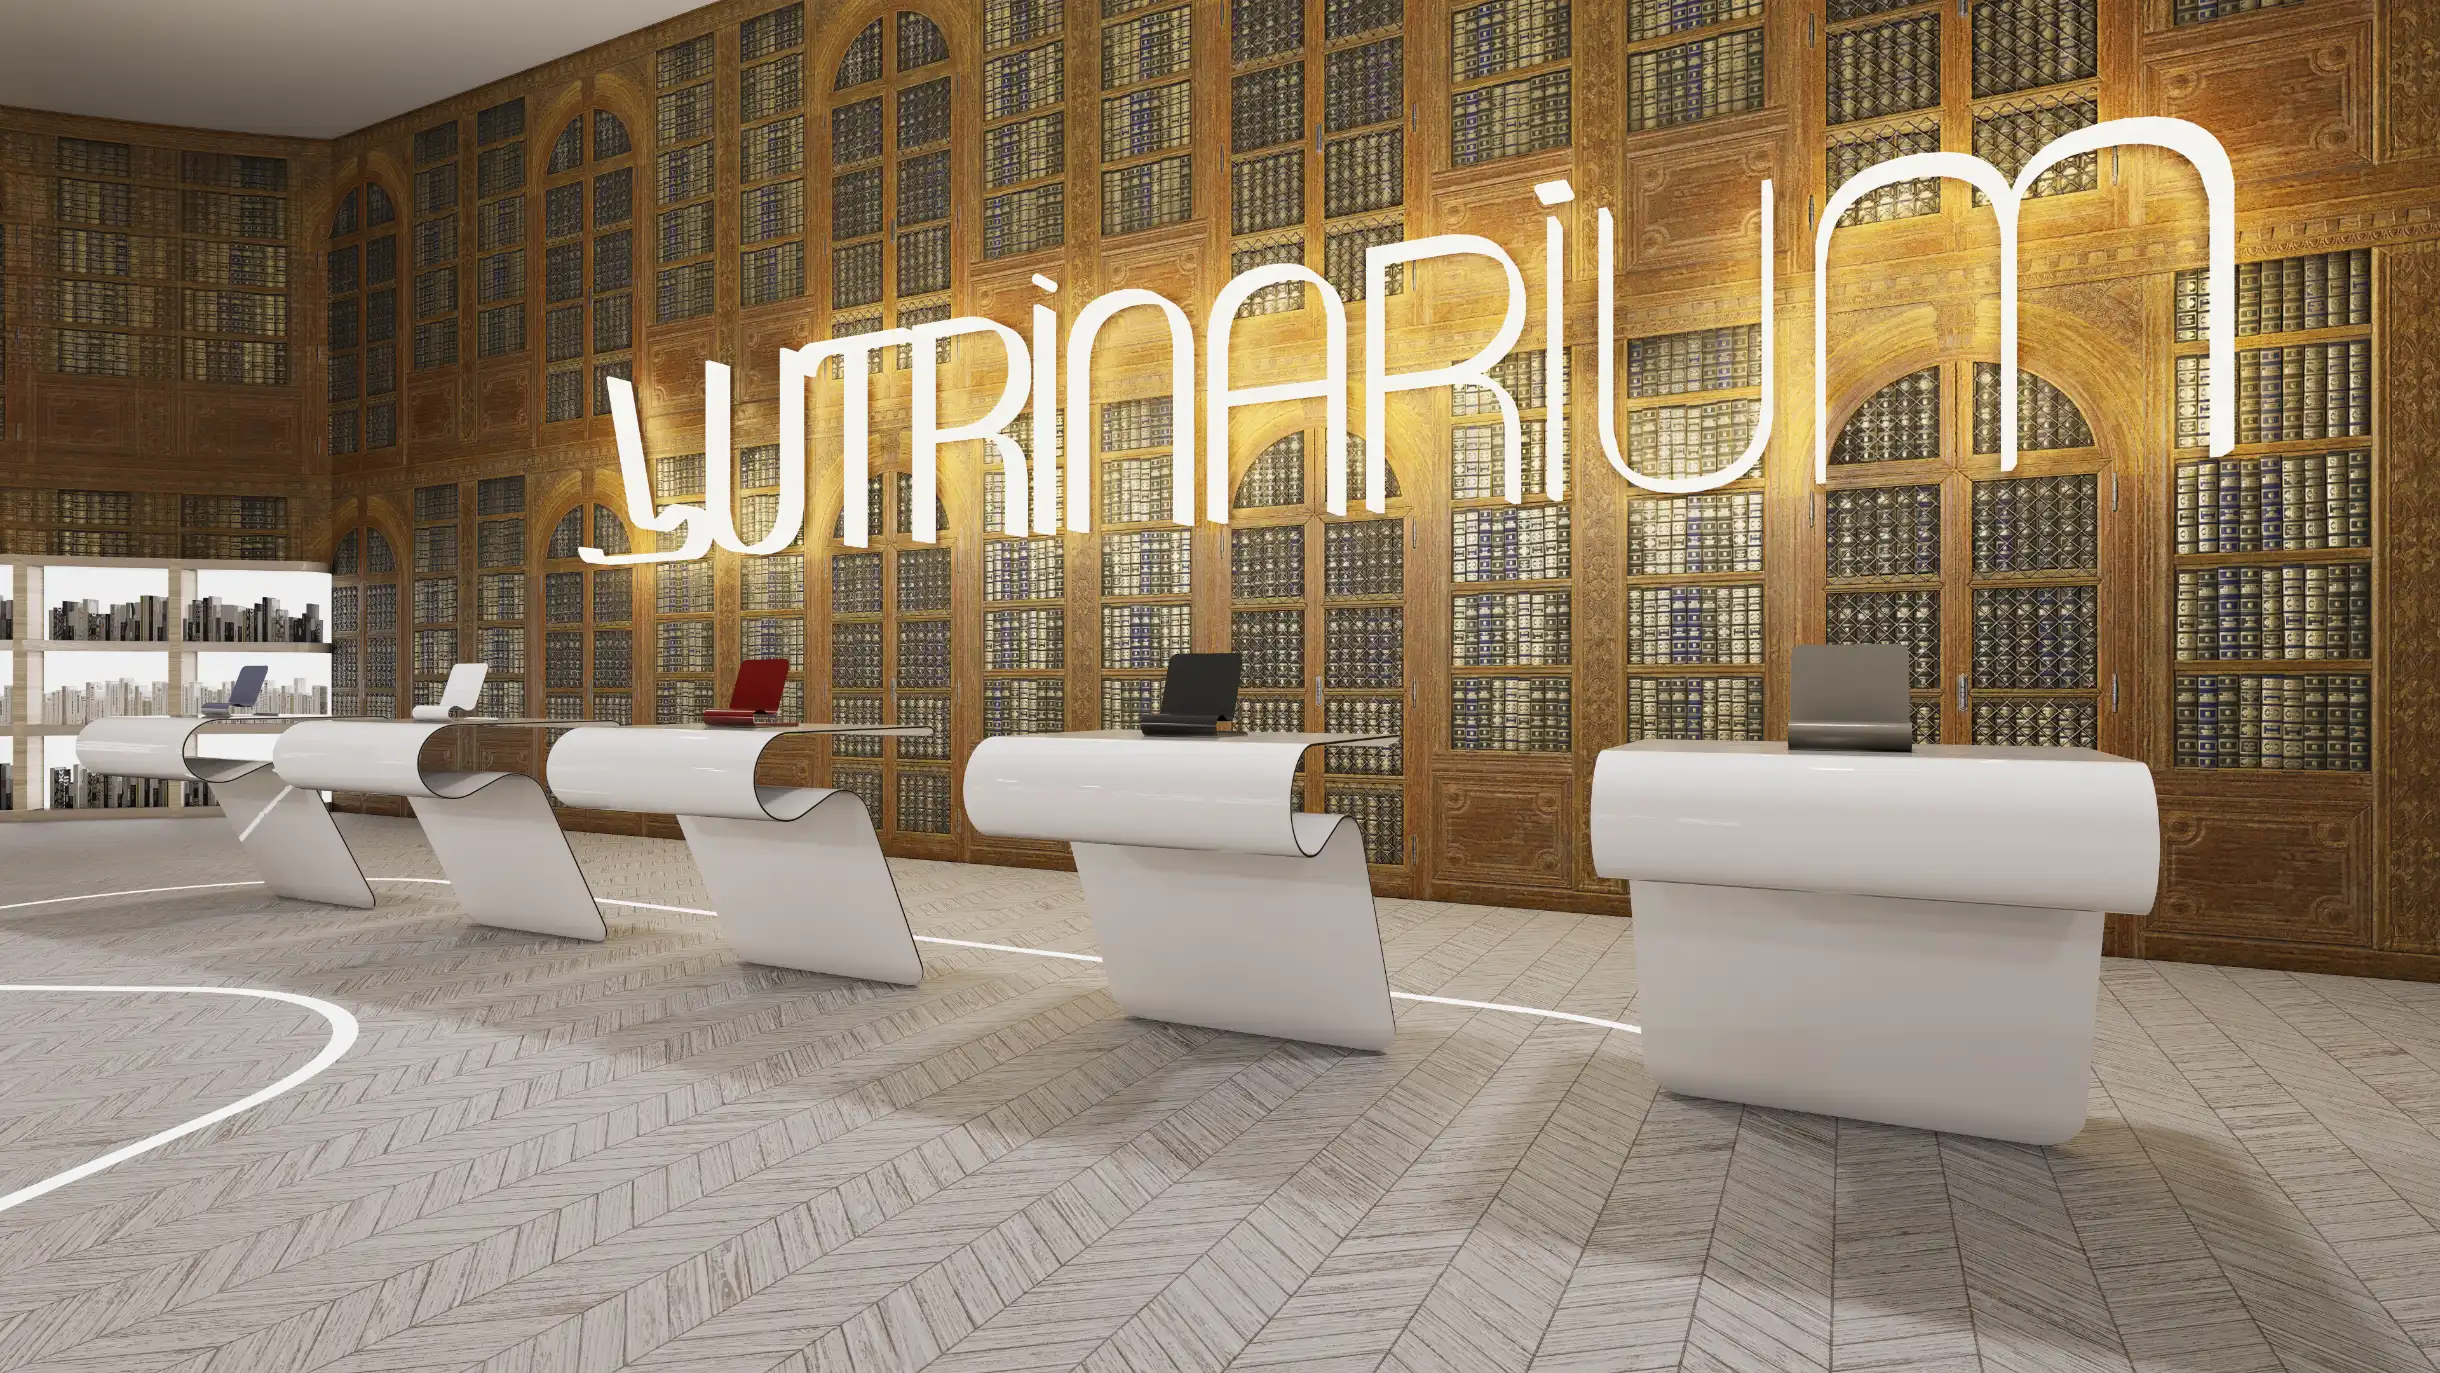 Image du showroom virtuel du Lutrinarium pour la présentation du lutrin.